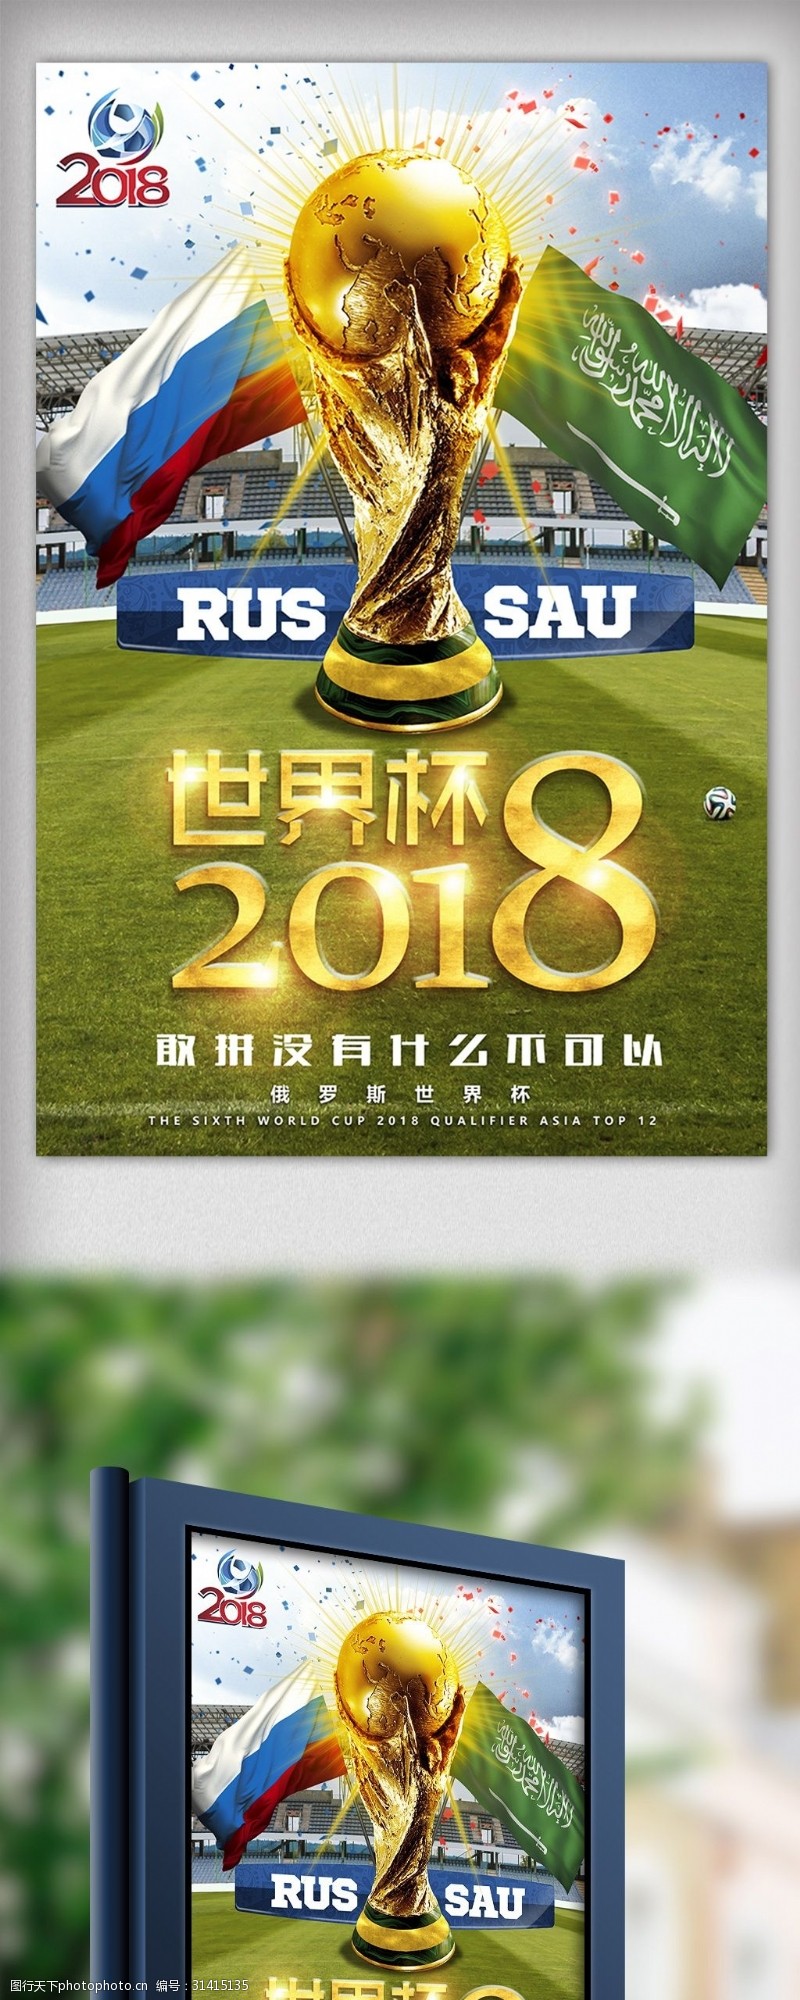 足球图片素材下载2018俄罗斯世界杯足球赛海报设计